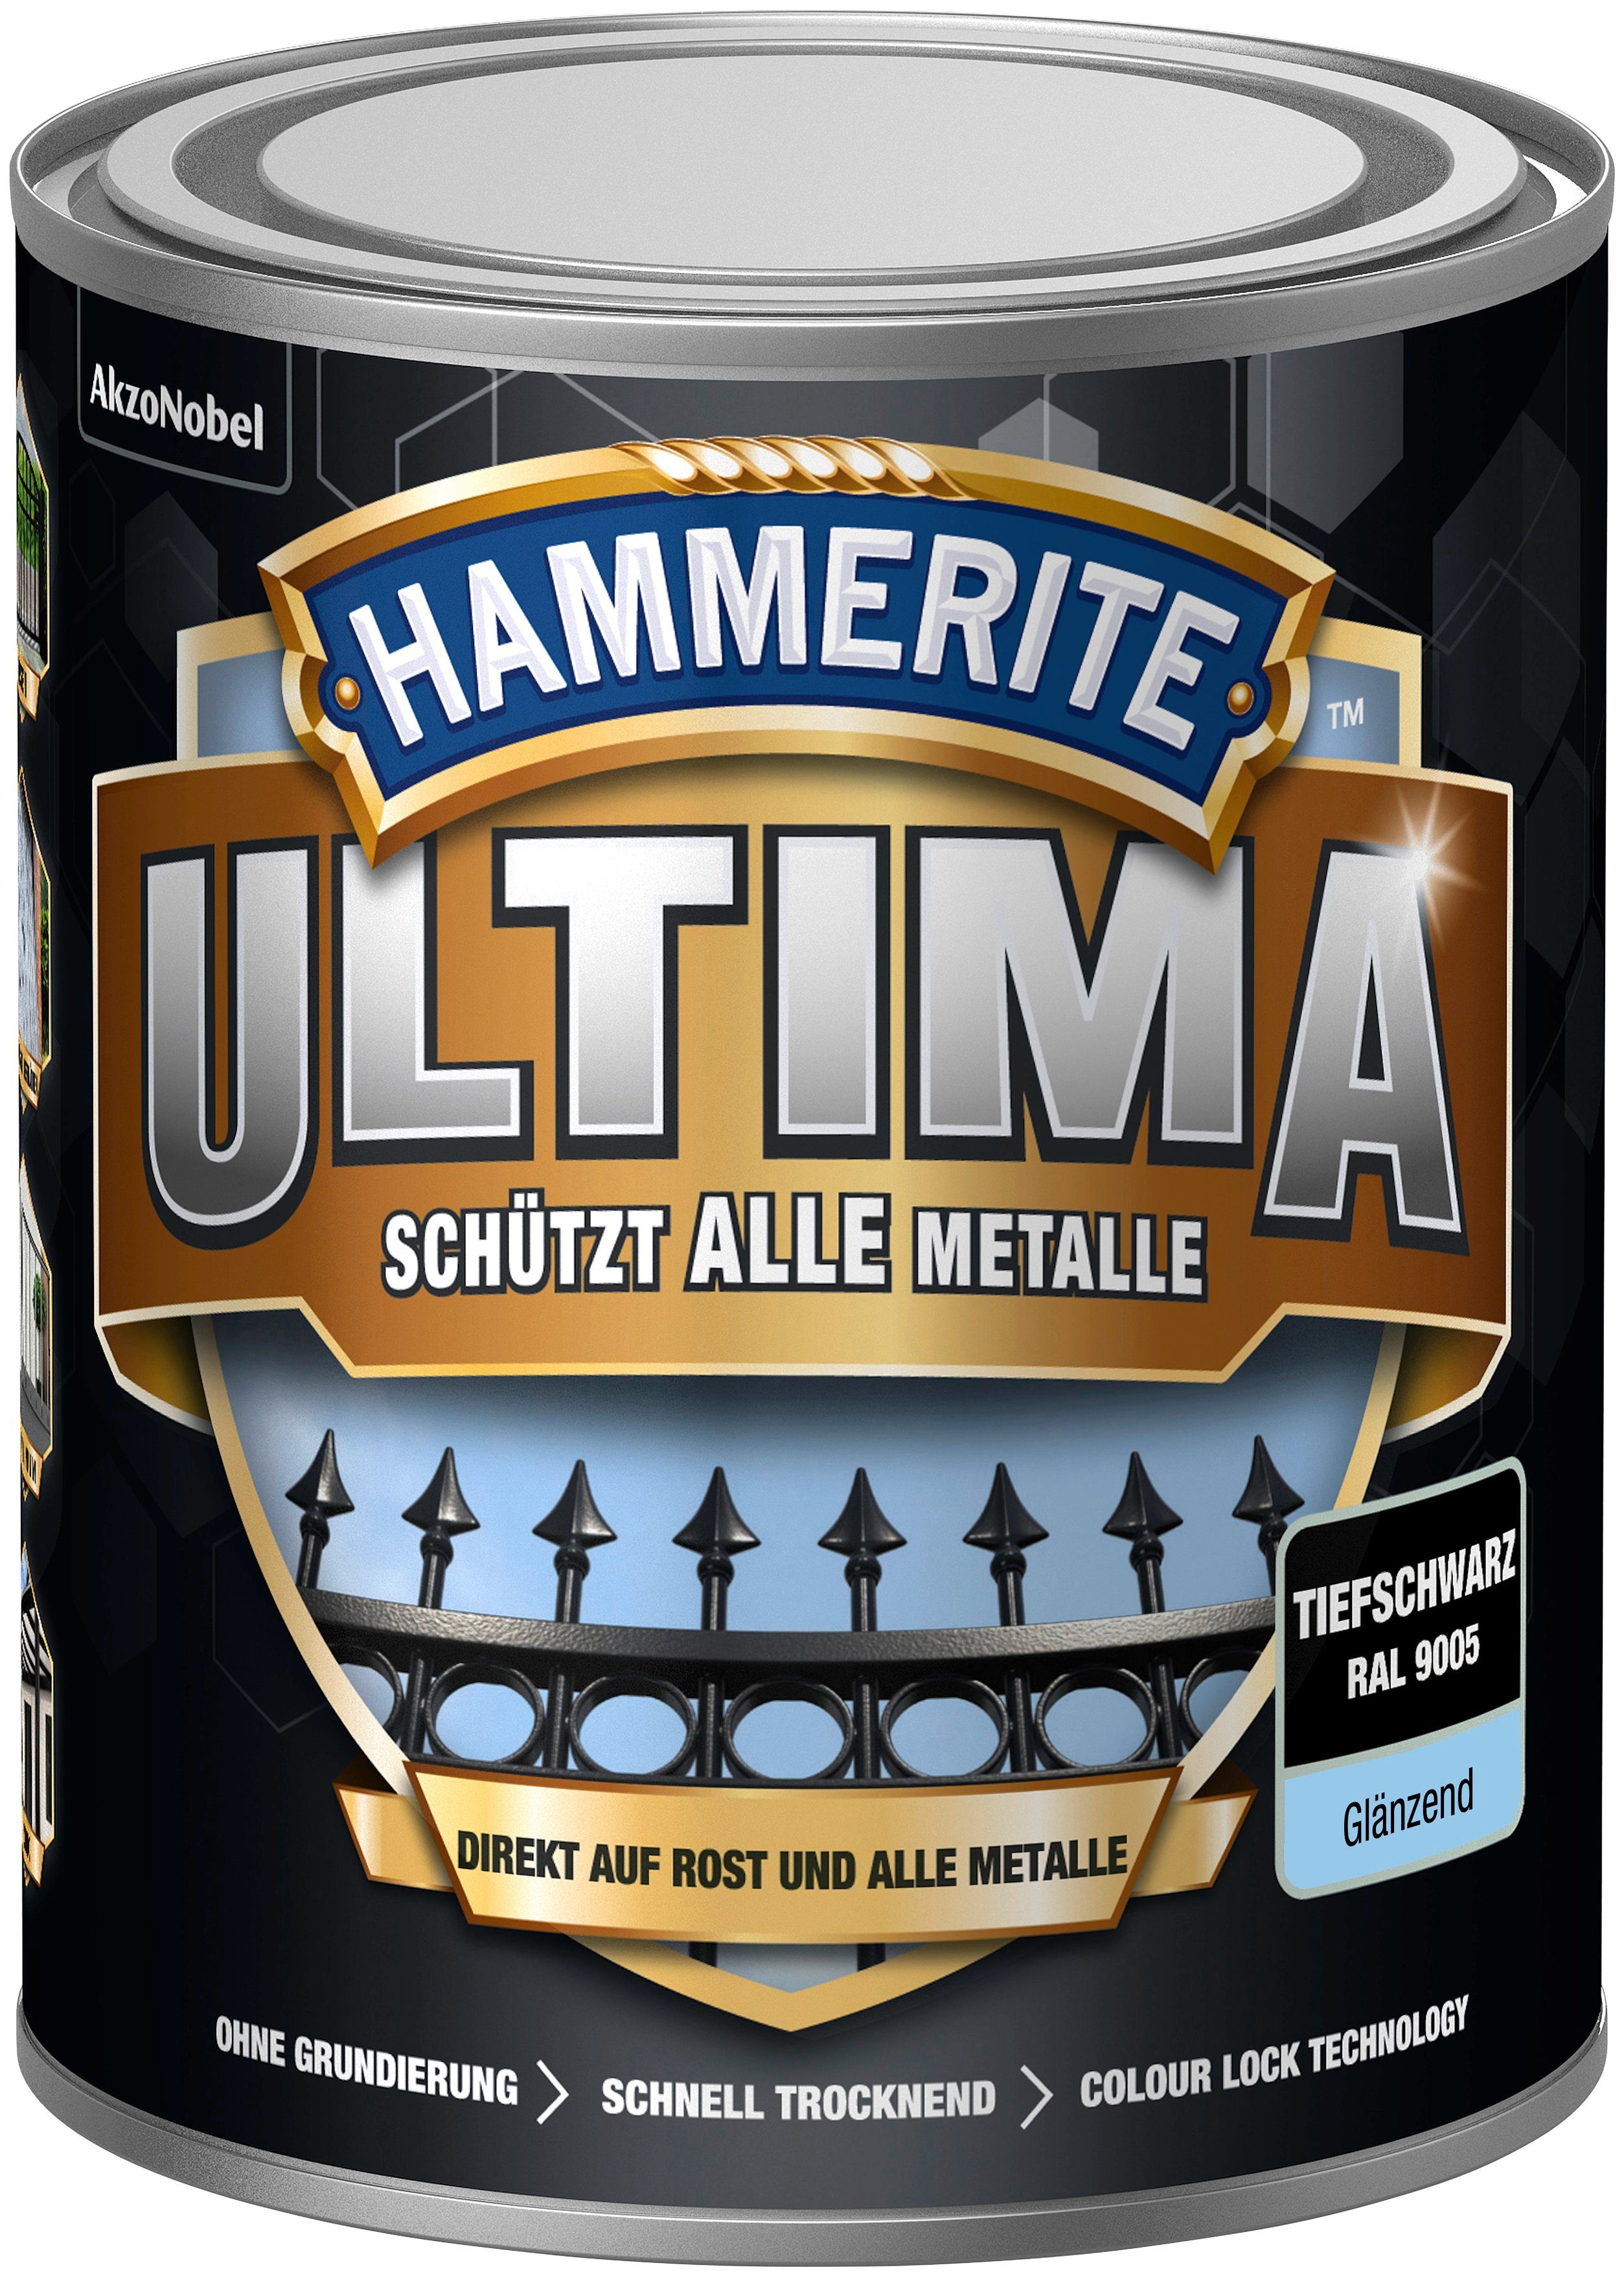 Hammerite  Metallschutzlack ULTIMA schützt alle Metalle, 3in1, tiefschwarz RAL 9005, glänzend